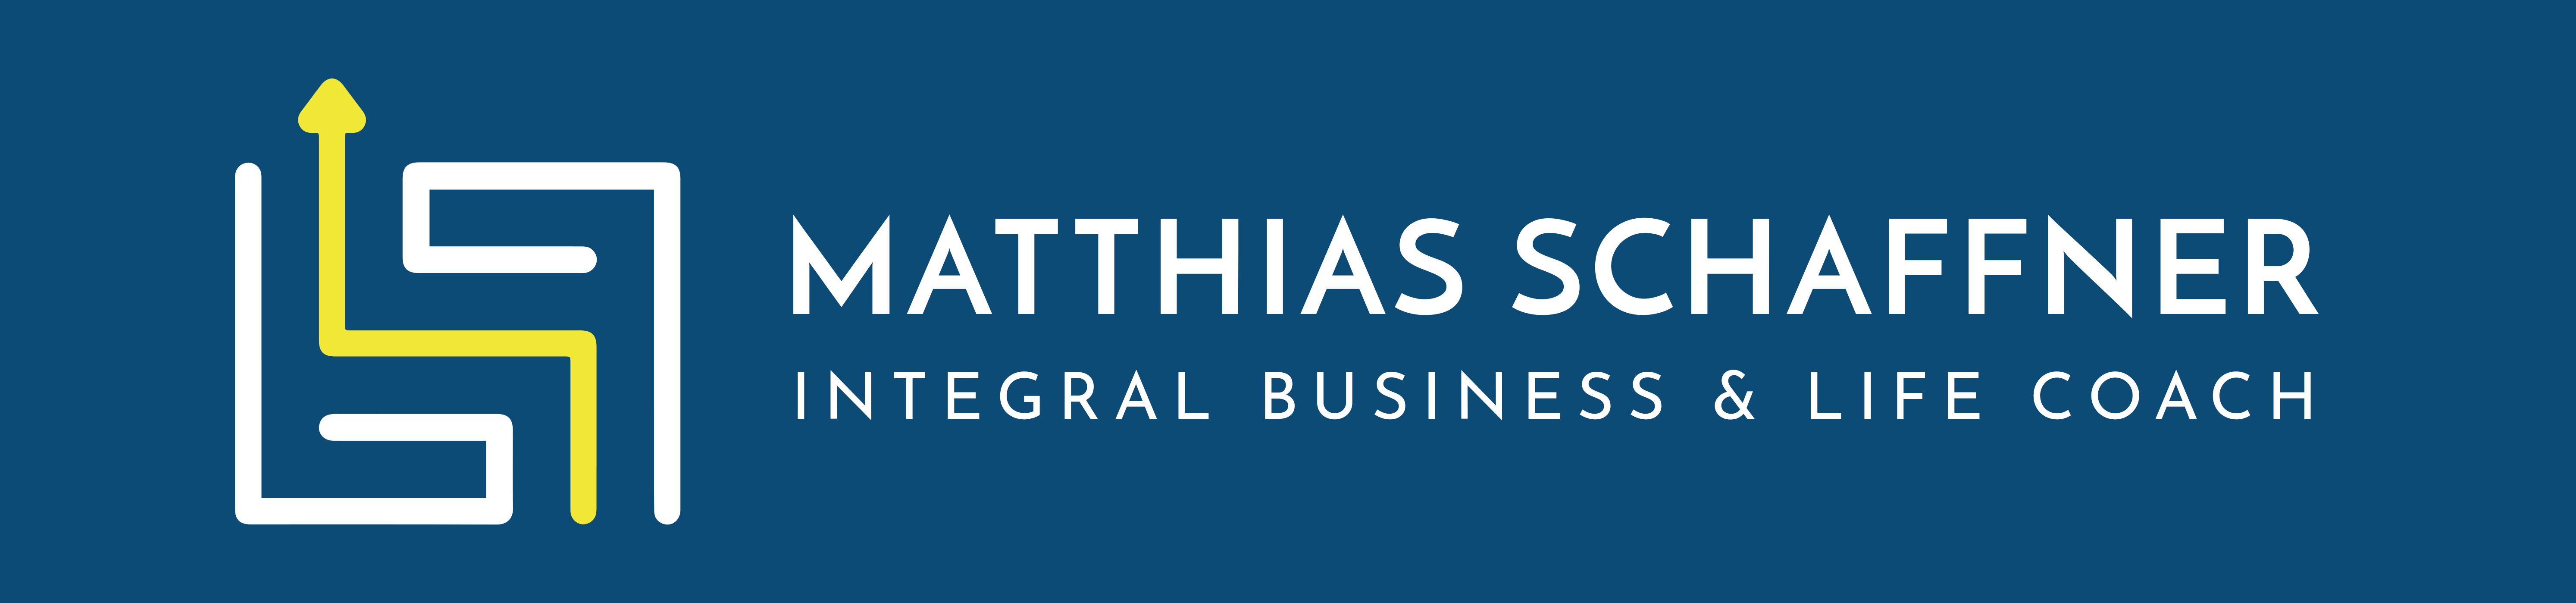 Matthias Schaffner – Integral Life & Business Coach